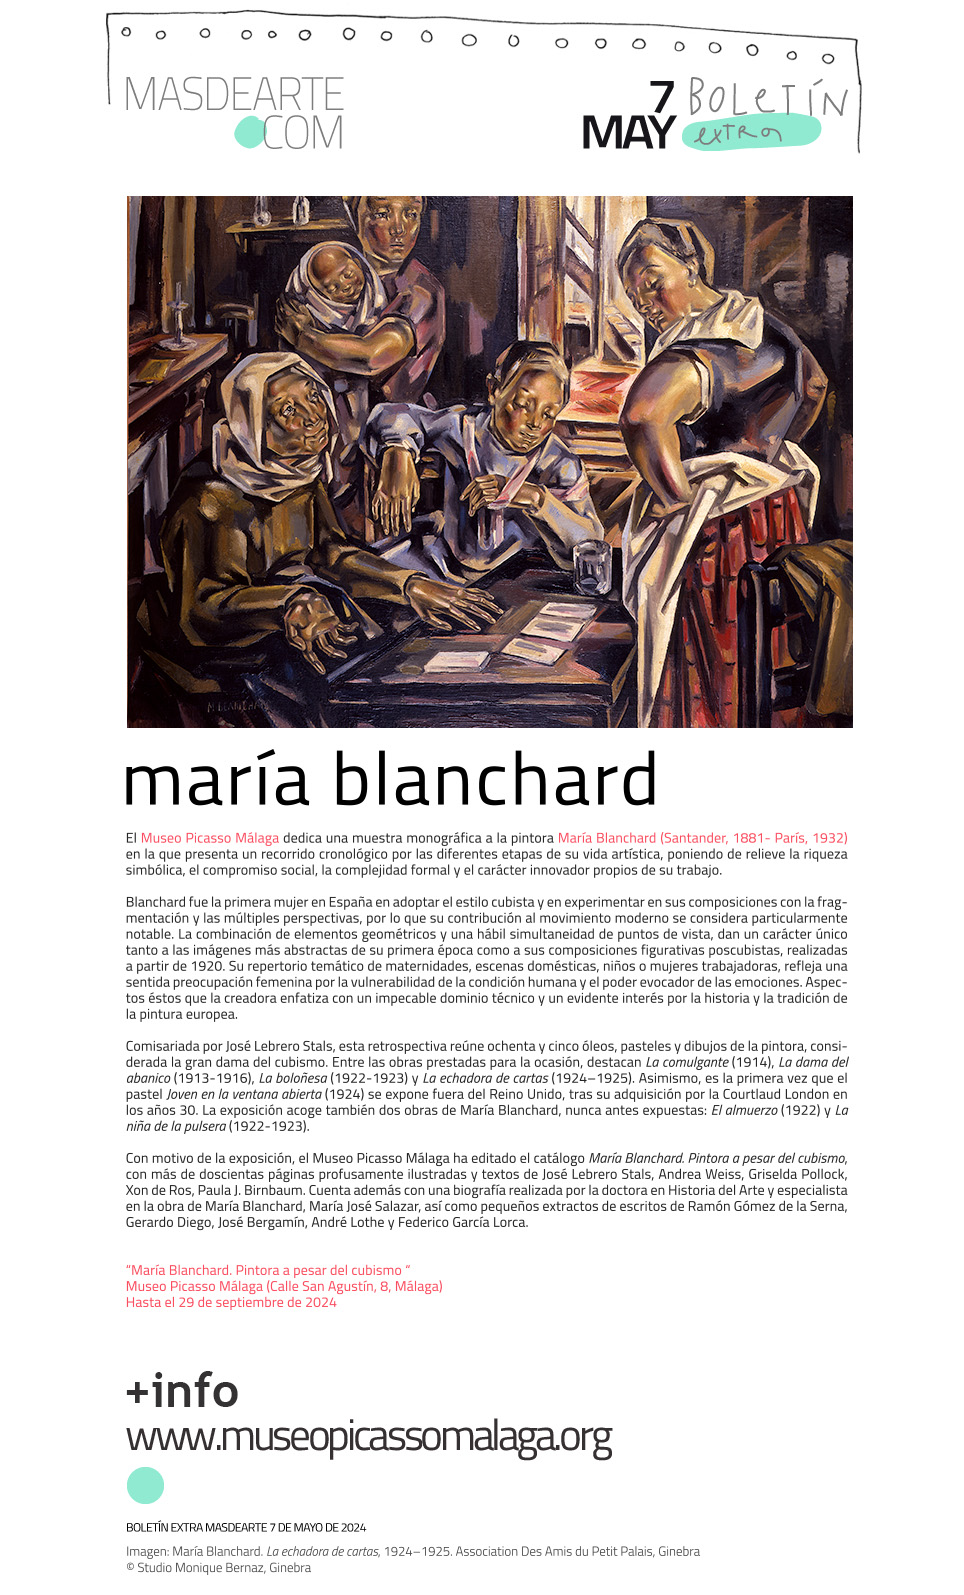 Extra masdearte: María Blanchard. Pintora
 a pesar del cubismo, en el Museo Picasso Málaga